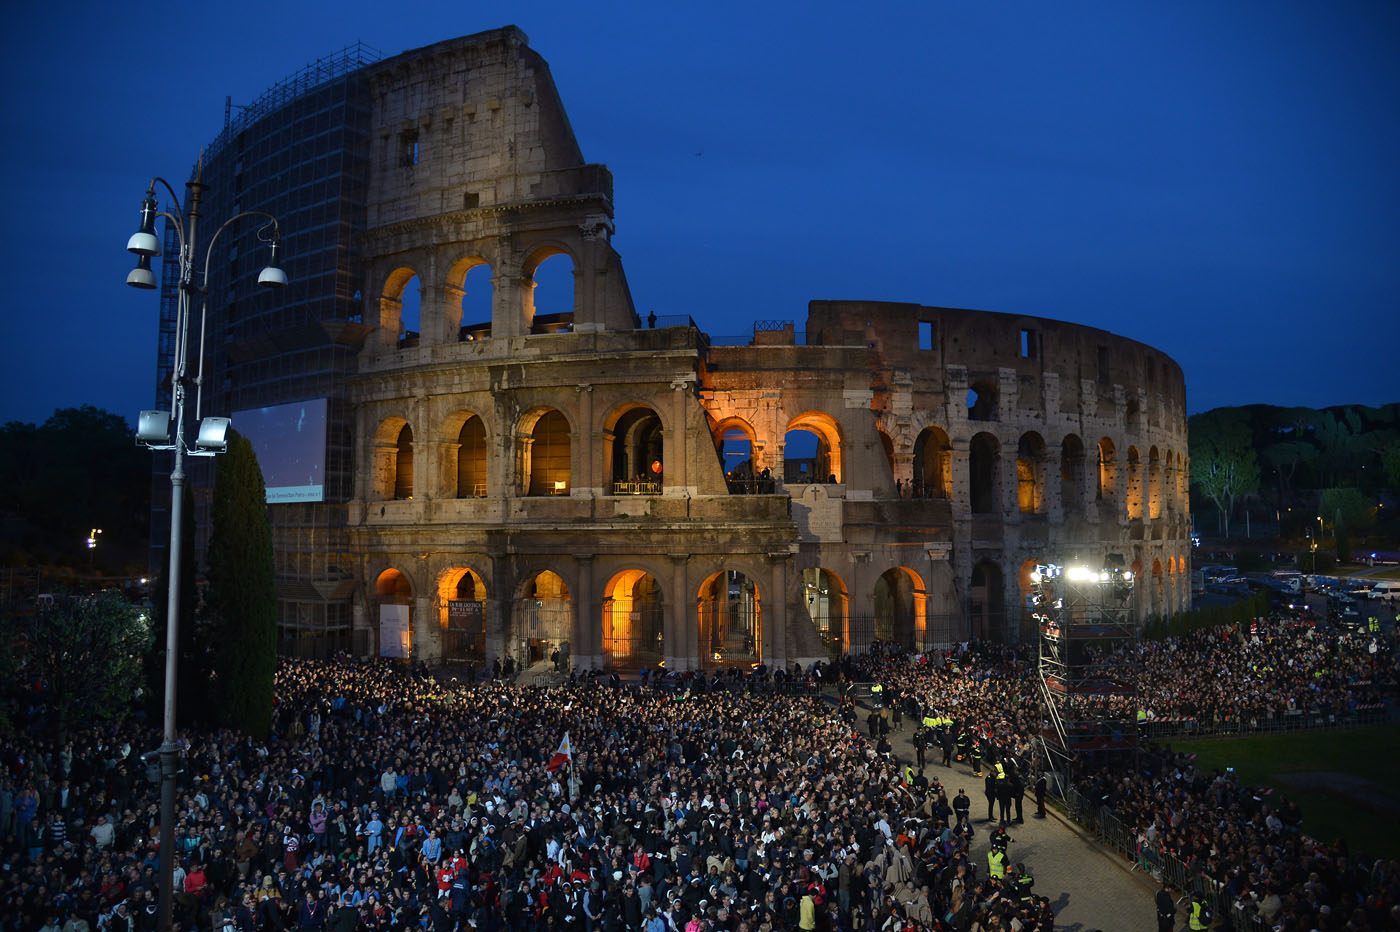 El Papa presidió el Via Crucis en el Coliseo romano (Fotos)